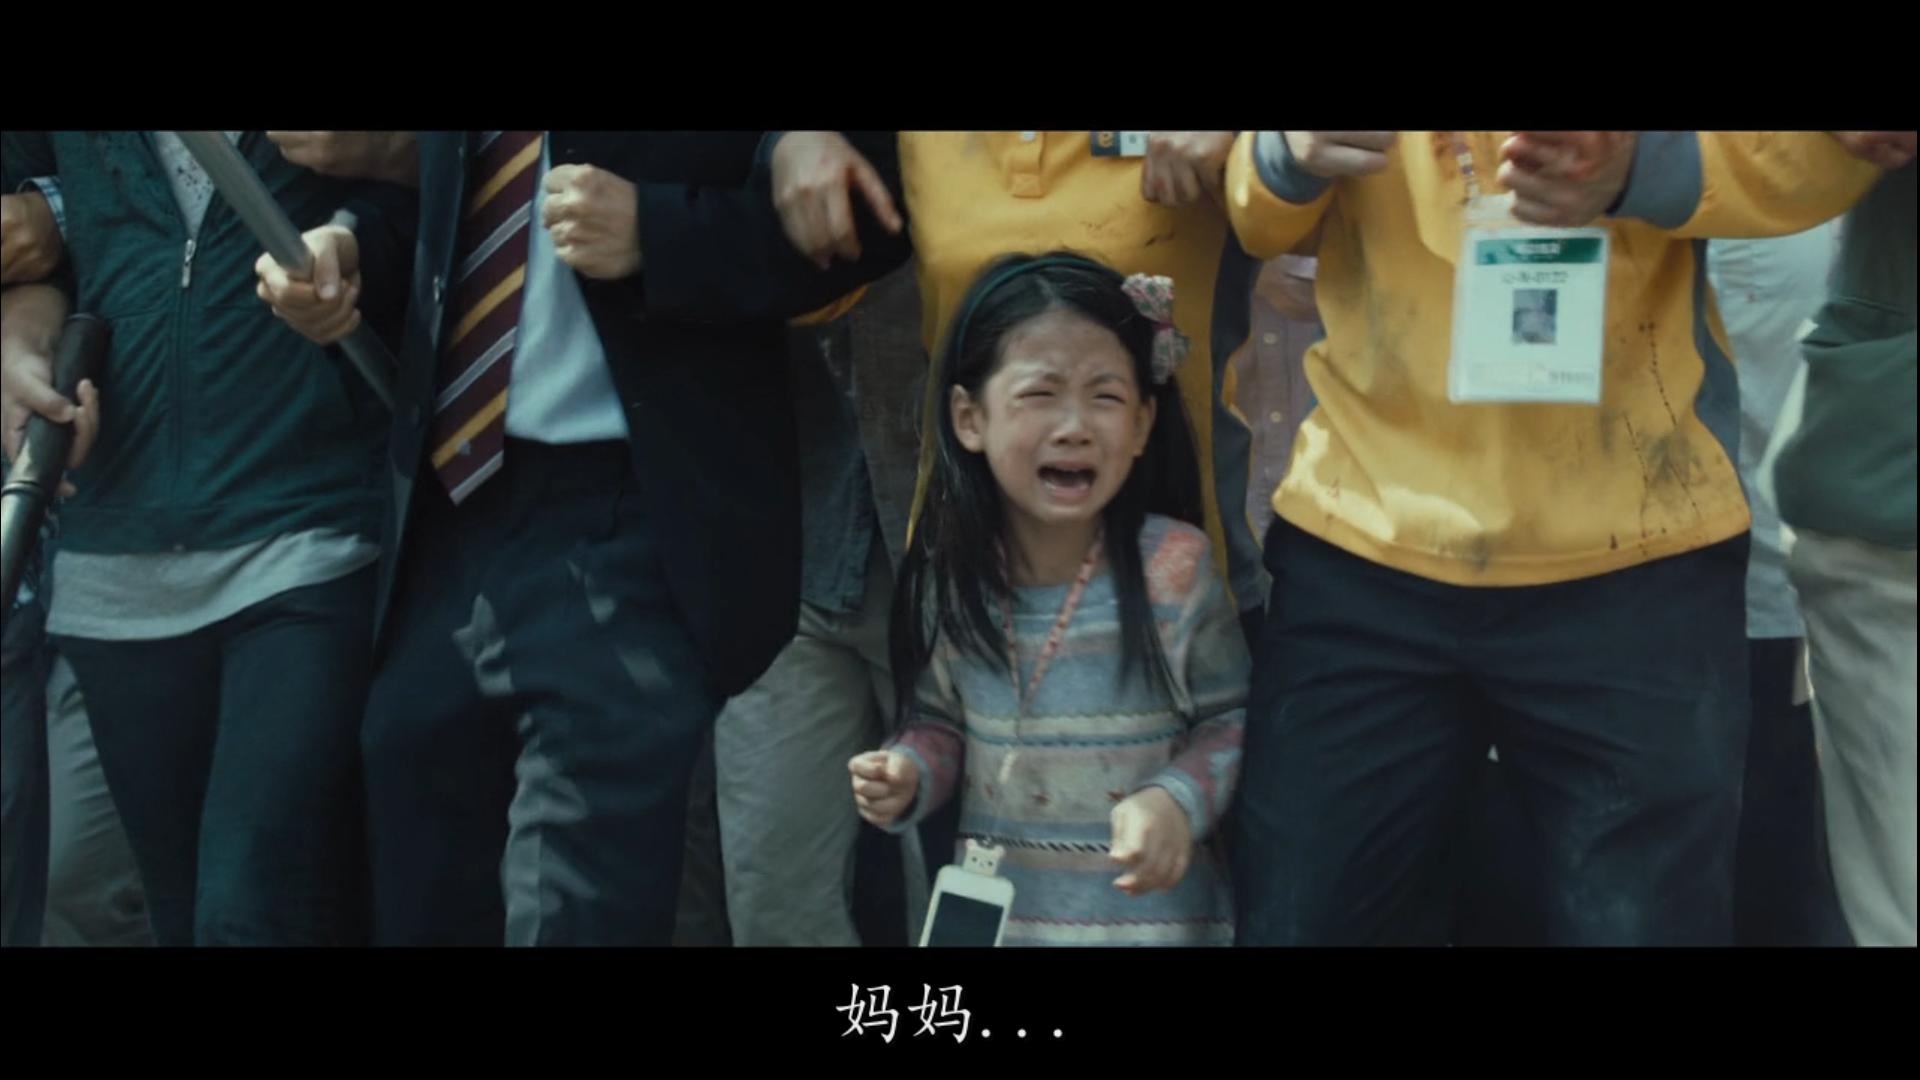 这部电影看哭了。。。。韩国电影“流感”